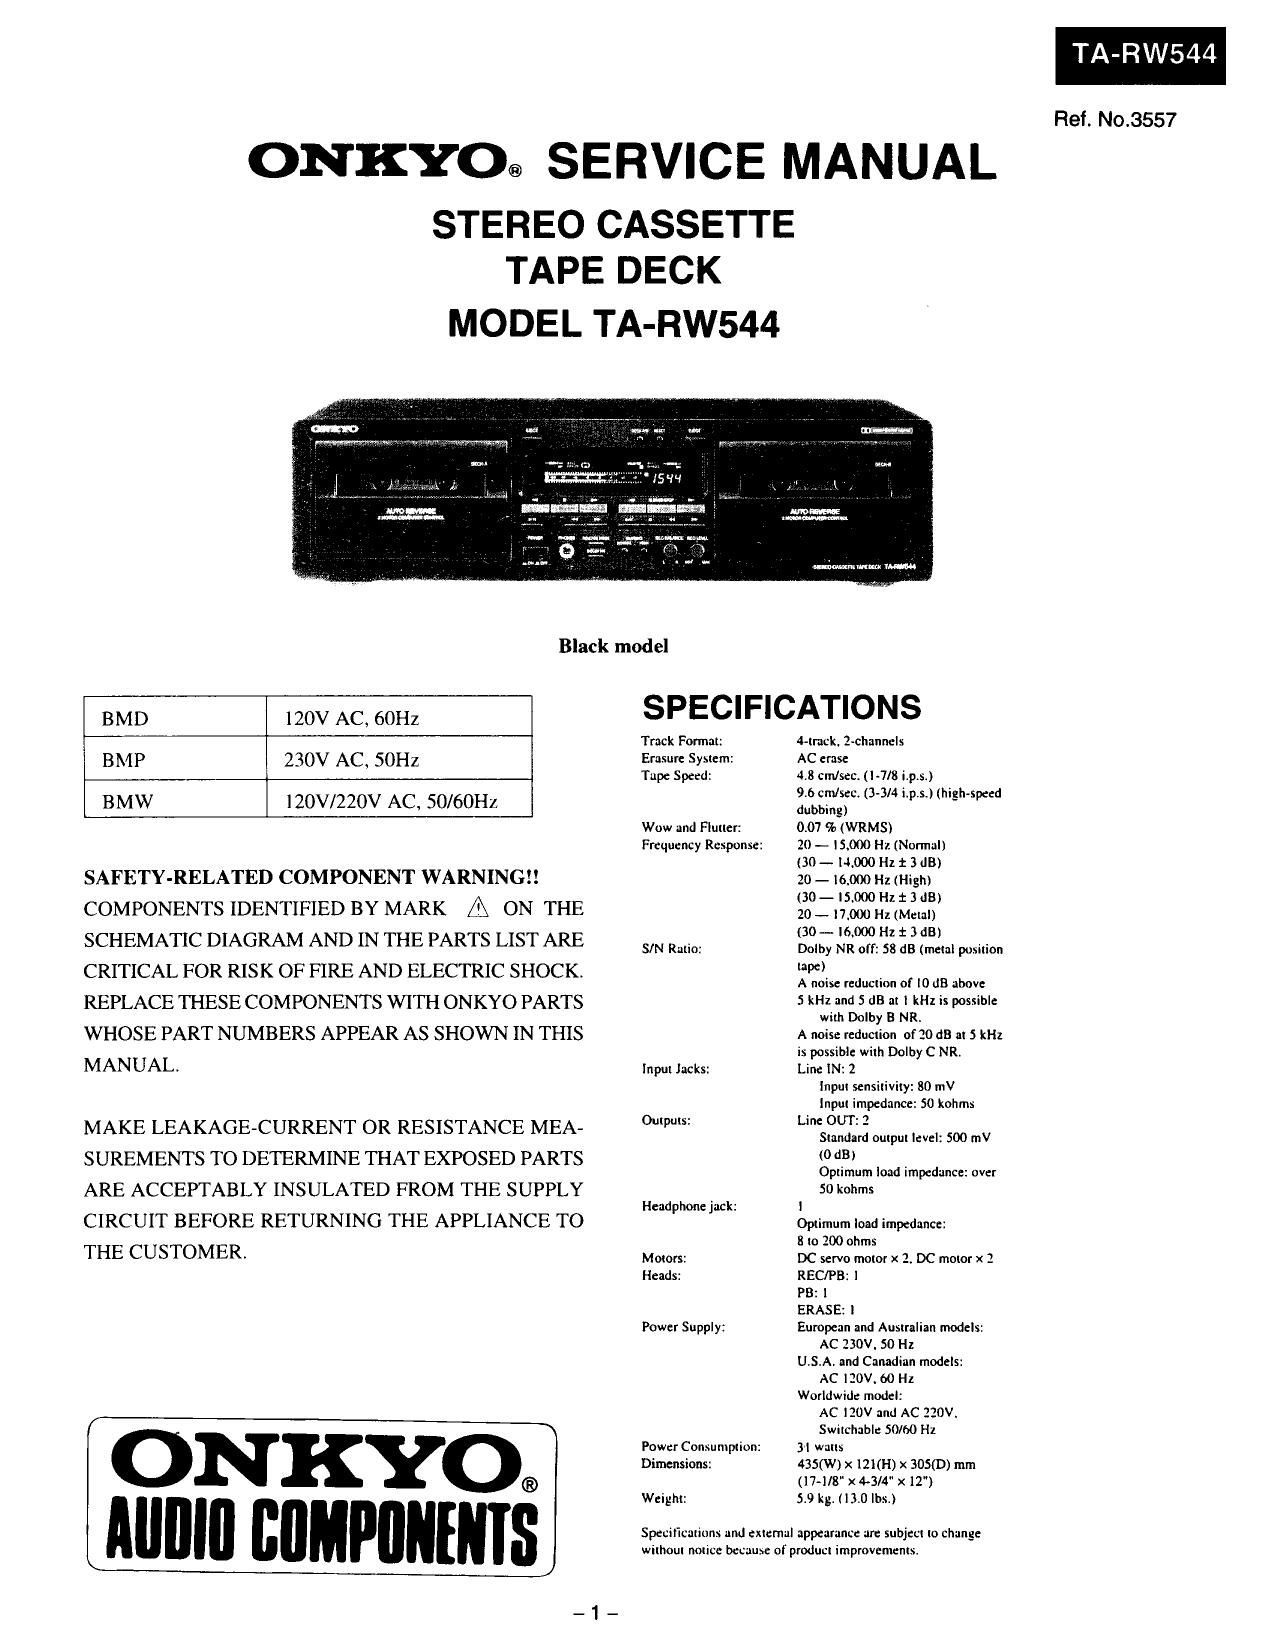 Onkyo TARW 544 Service Manual